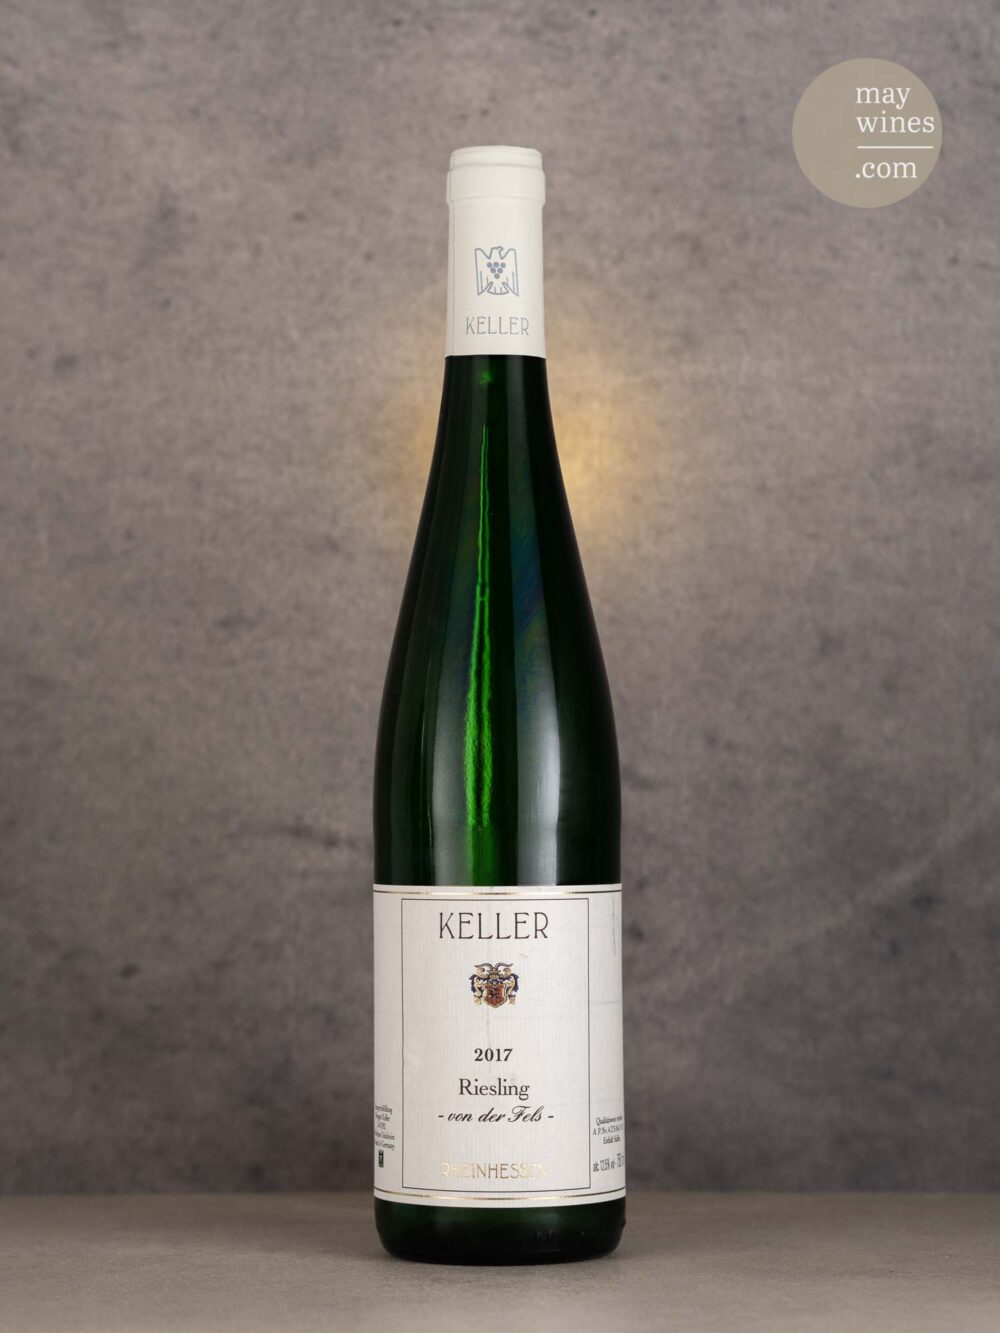 May Wines – Weißwein – 2017 Riesling "von der Fels" - Keller